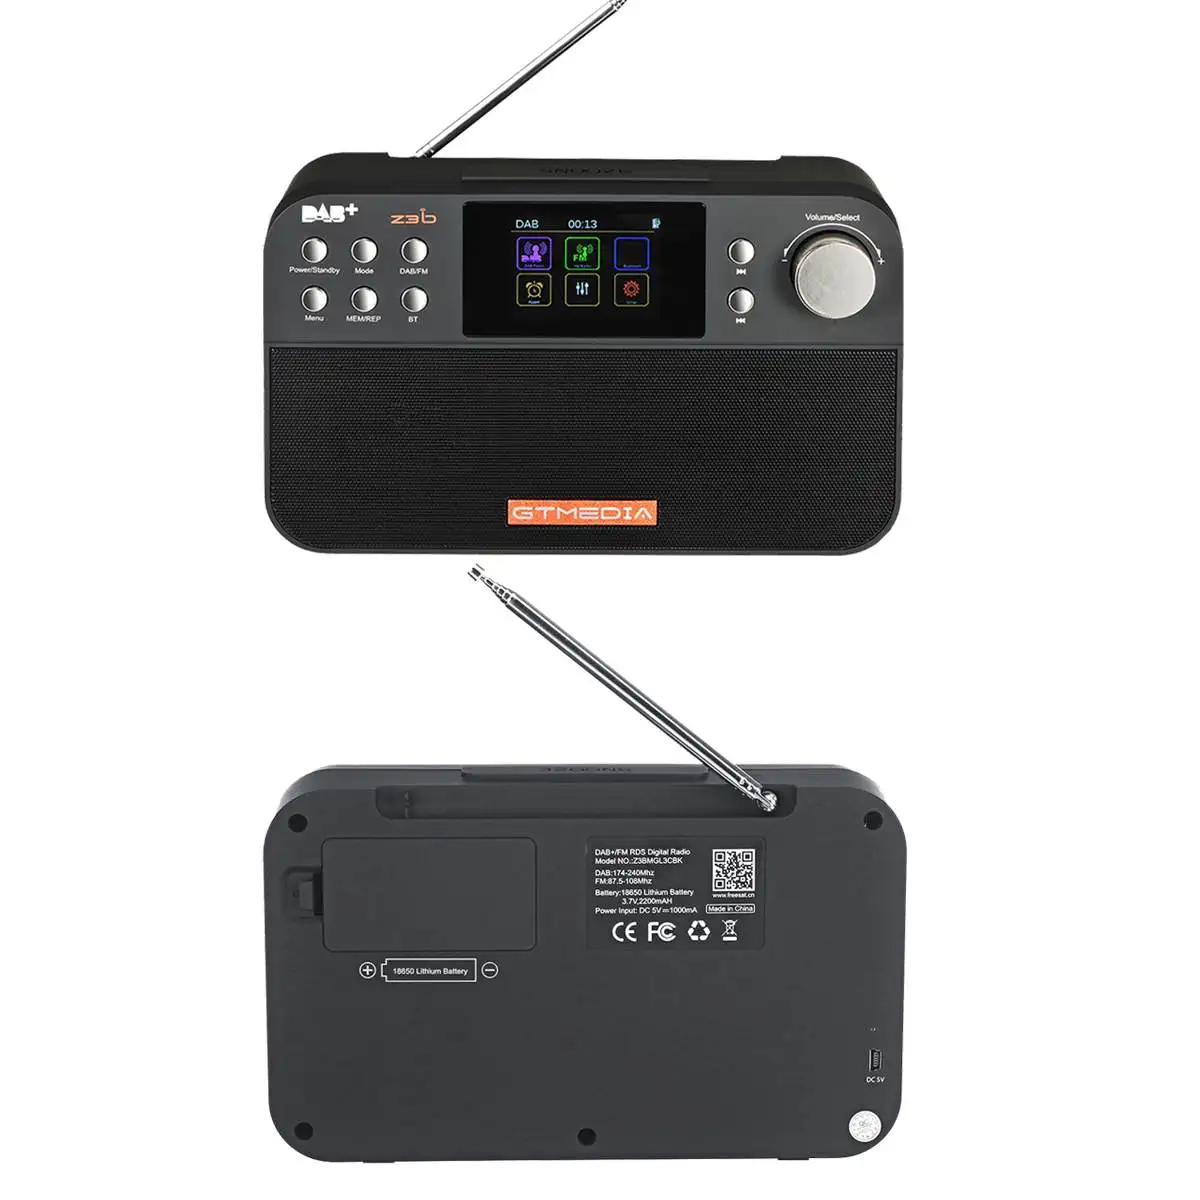 Портативный bluetooth 4,0 Цифровой радио DAB+ FM RDS Многополосный Радио стерео динамик с TFT дисплеем будильник таймер сна